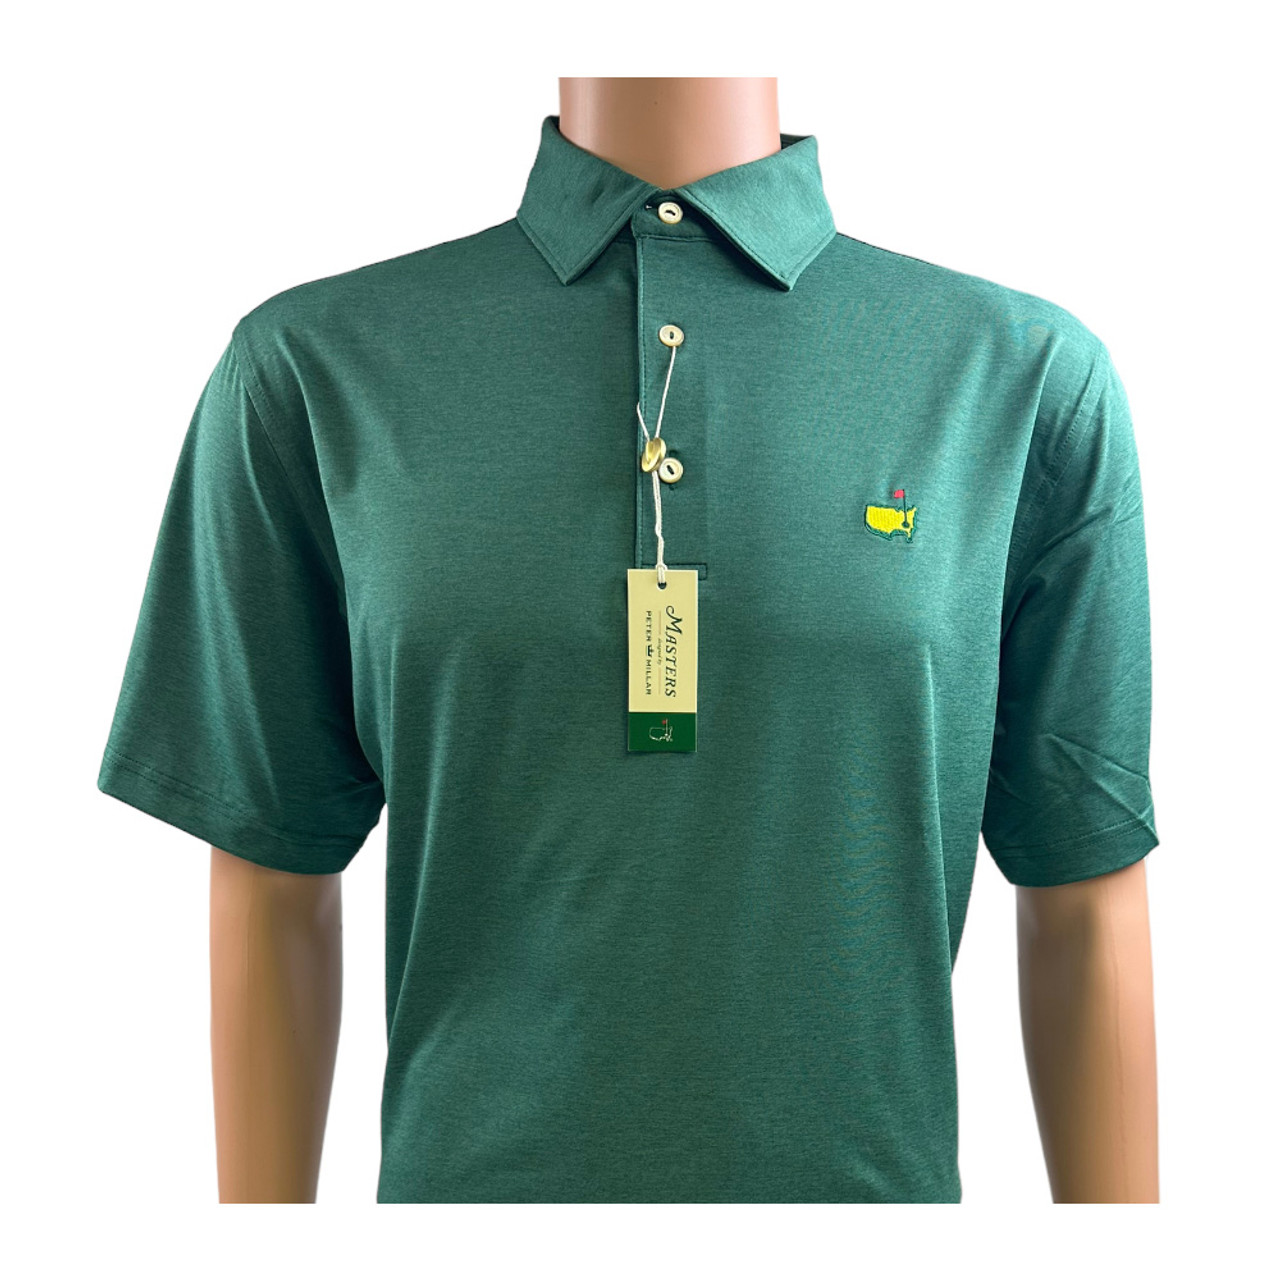 PETER MILLAR Men's Golf Clothing